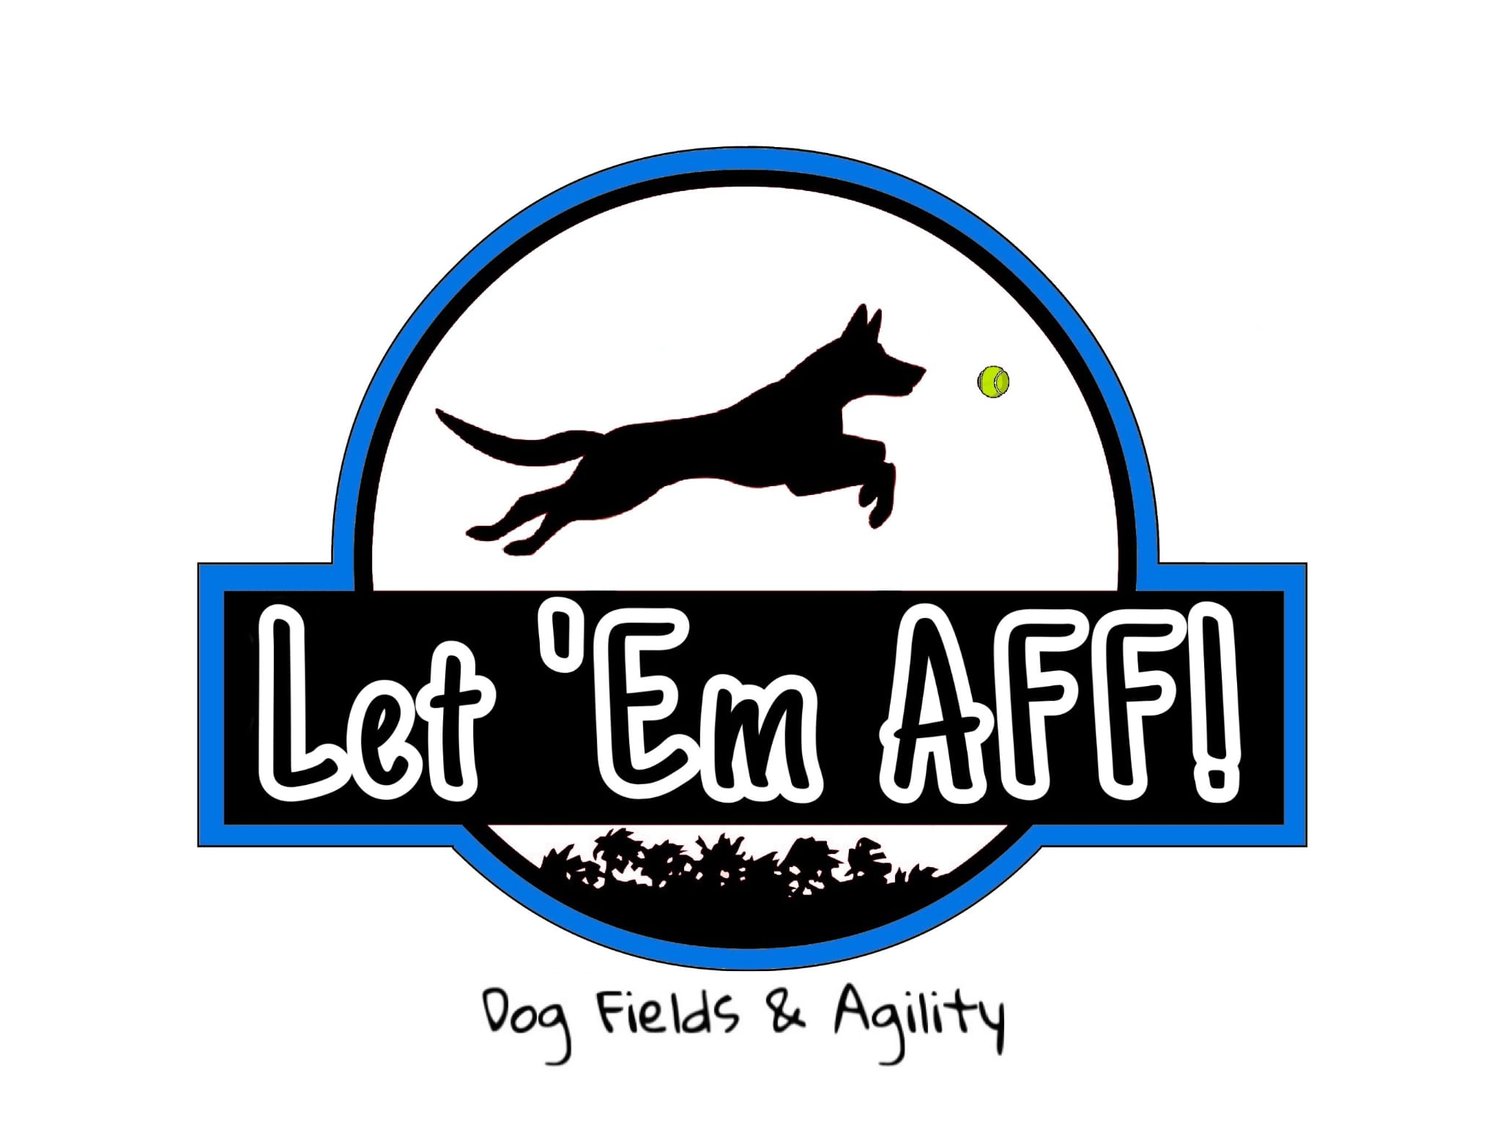 Let Em&#39; AFF! Dog Fields LTD